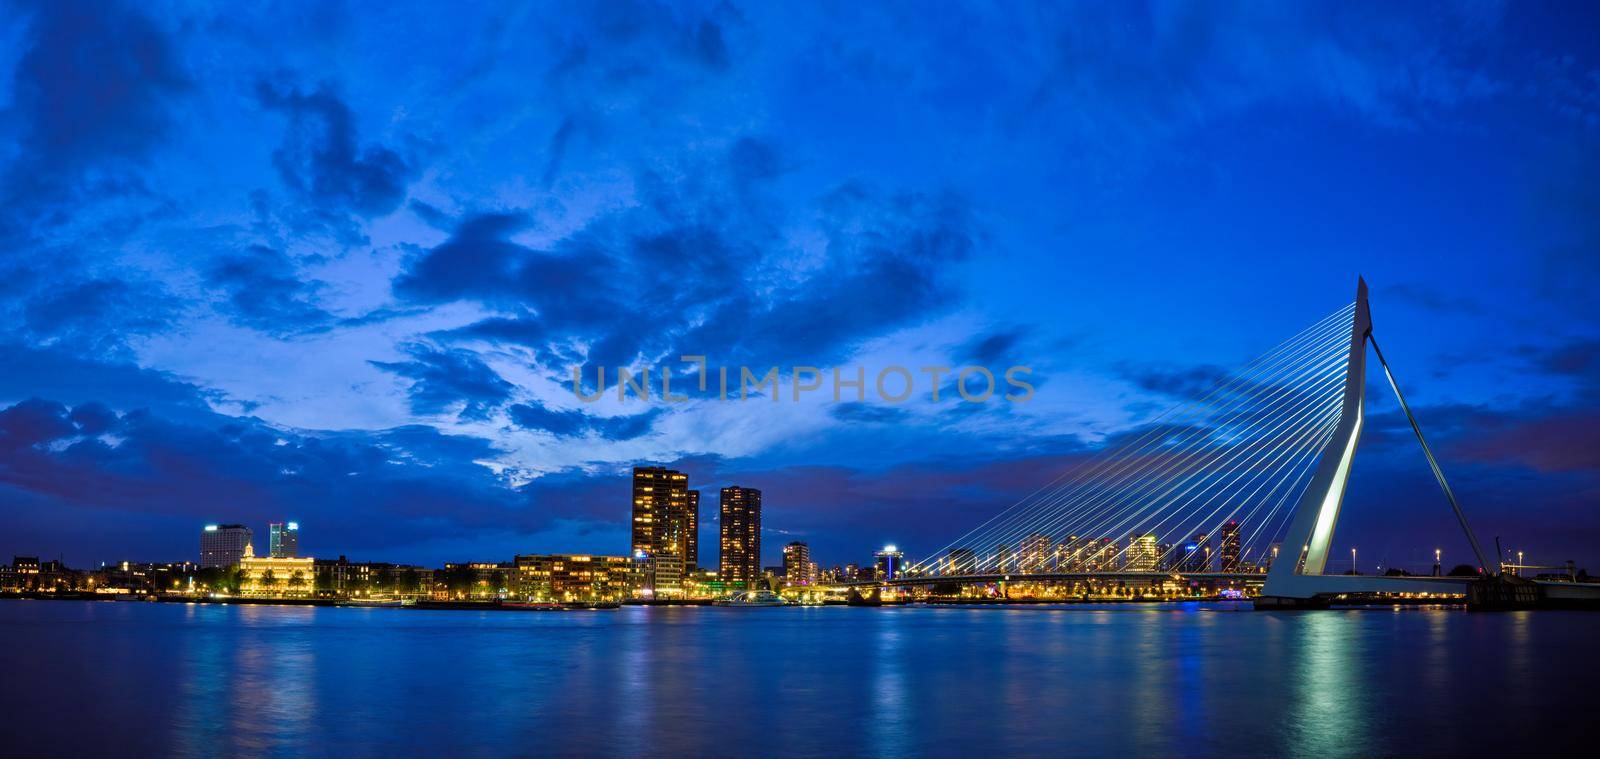 View of Erasmus Bridge Erasmusbrug and Rotterdam skyline. Rotterdam, Netherlands by dimol